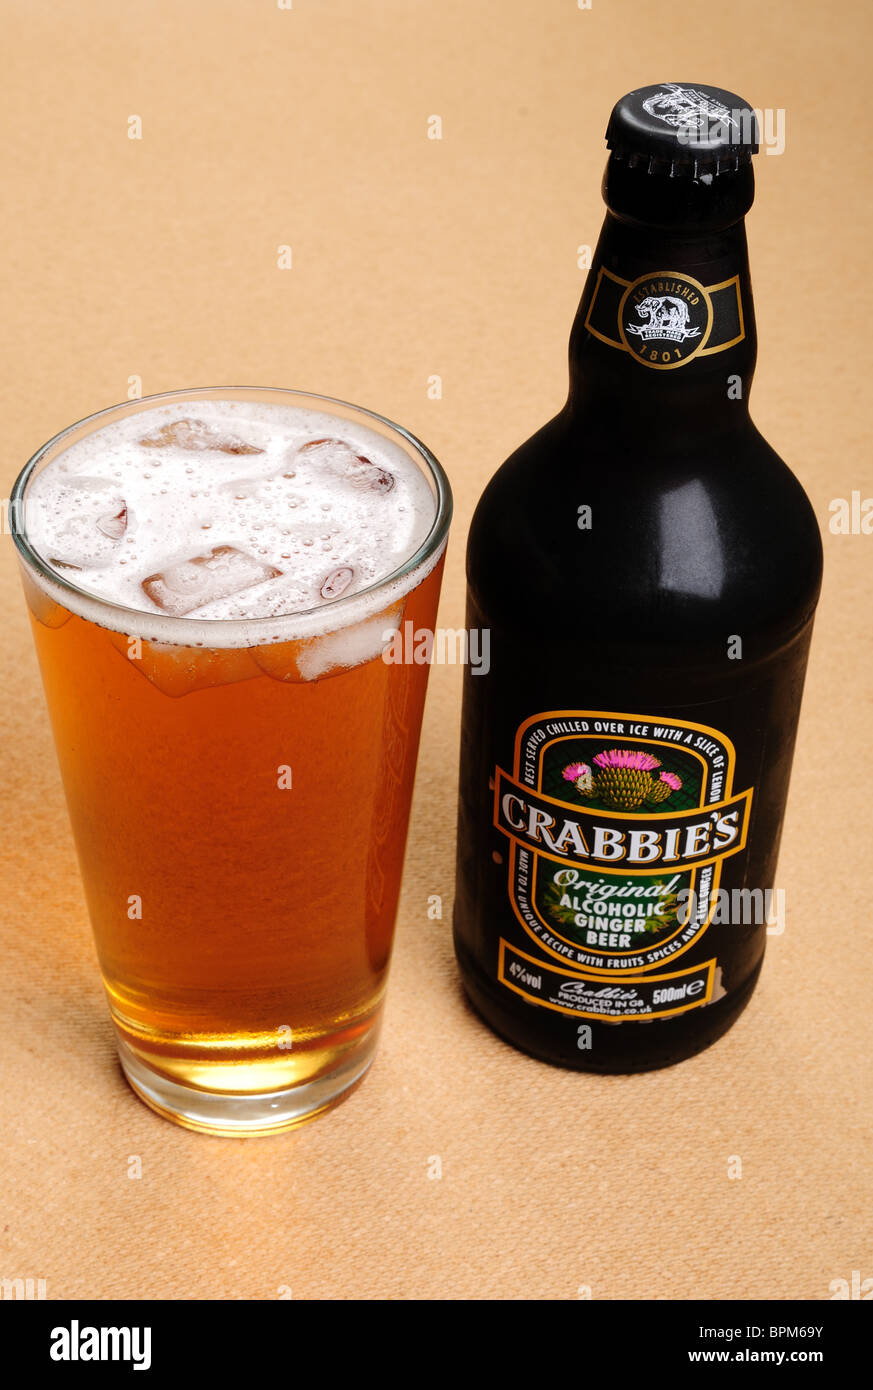 Crabbie's Original Ginger Beer. Stock Photo